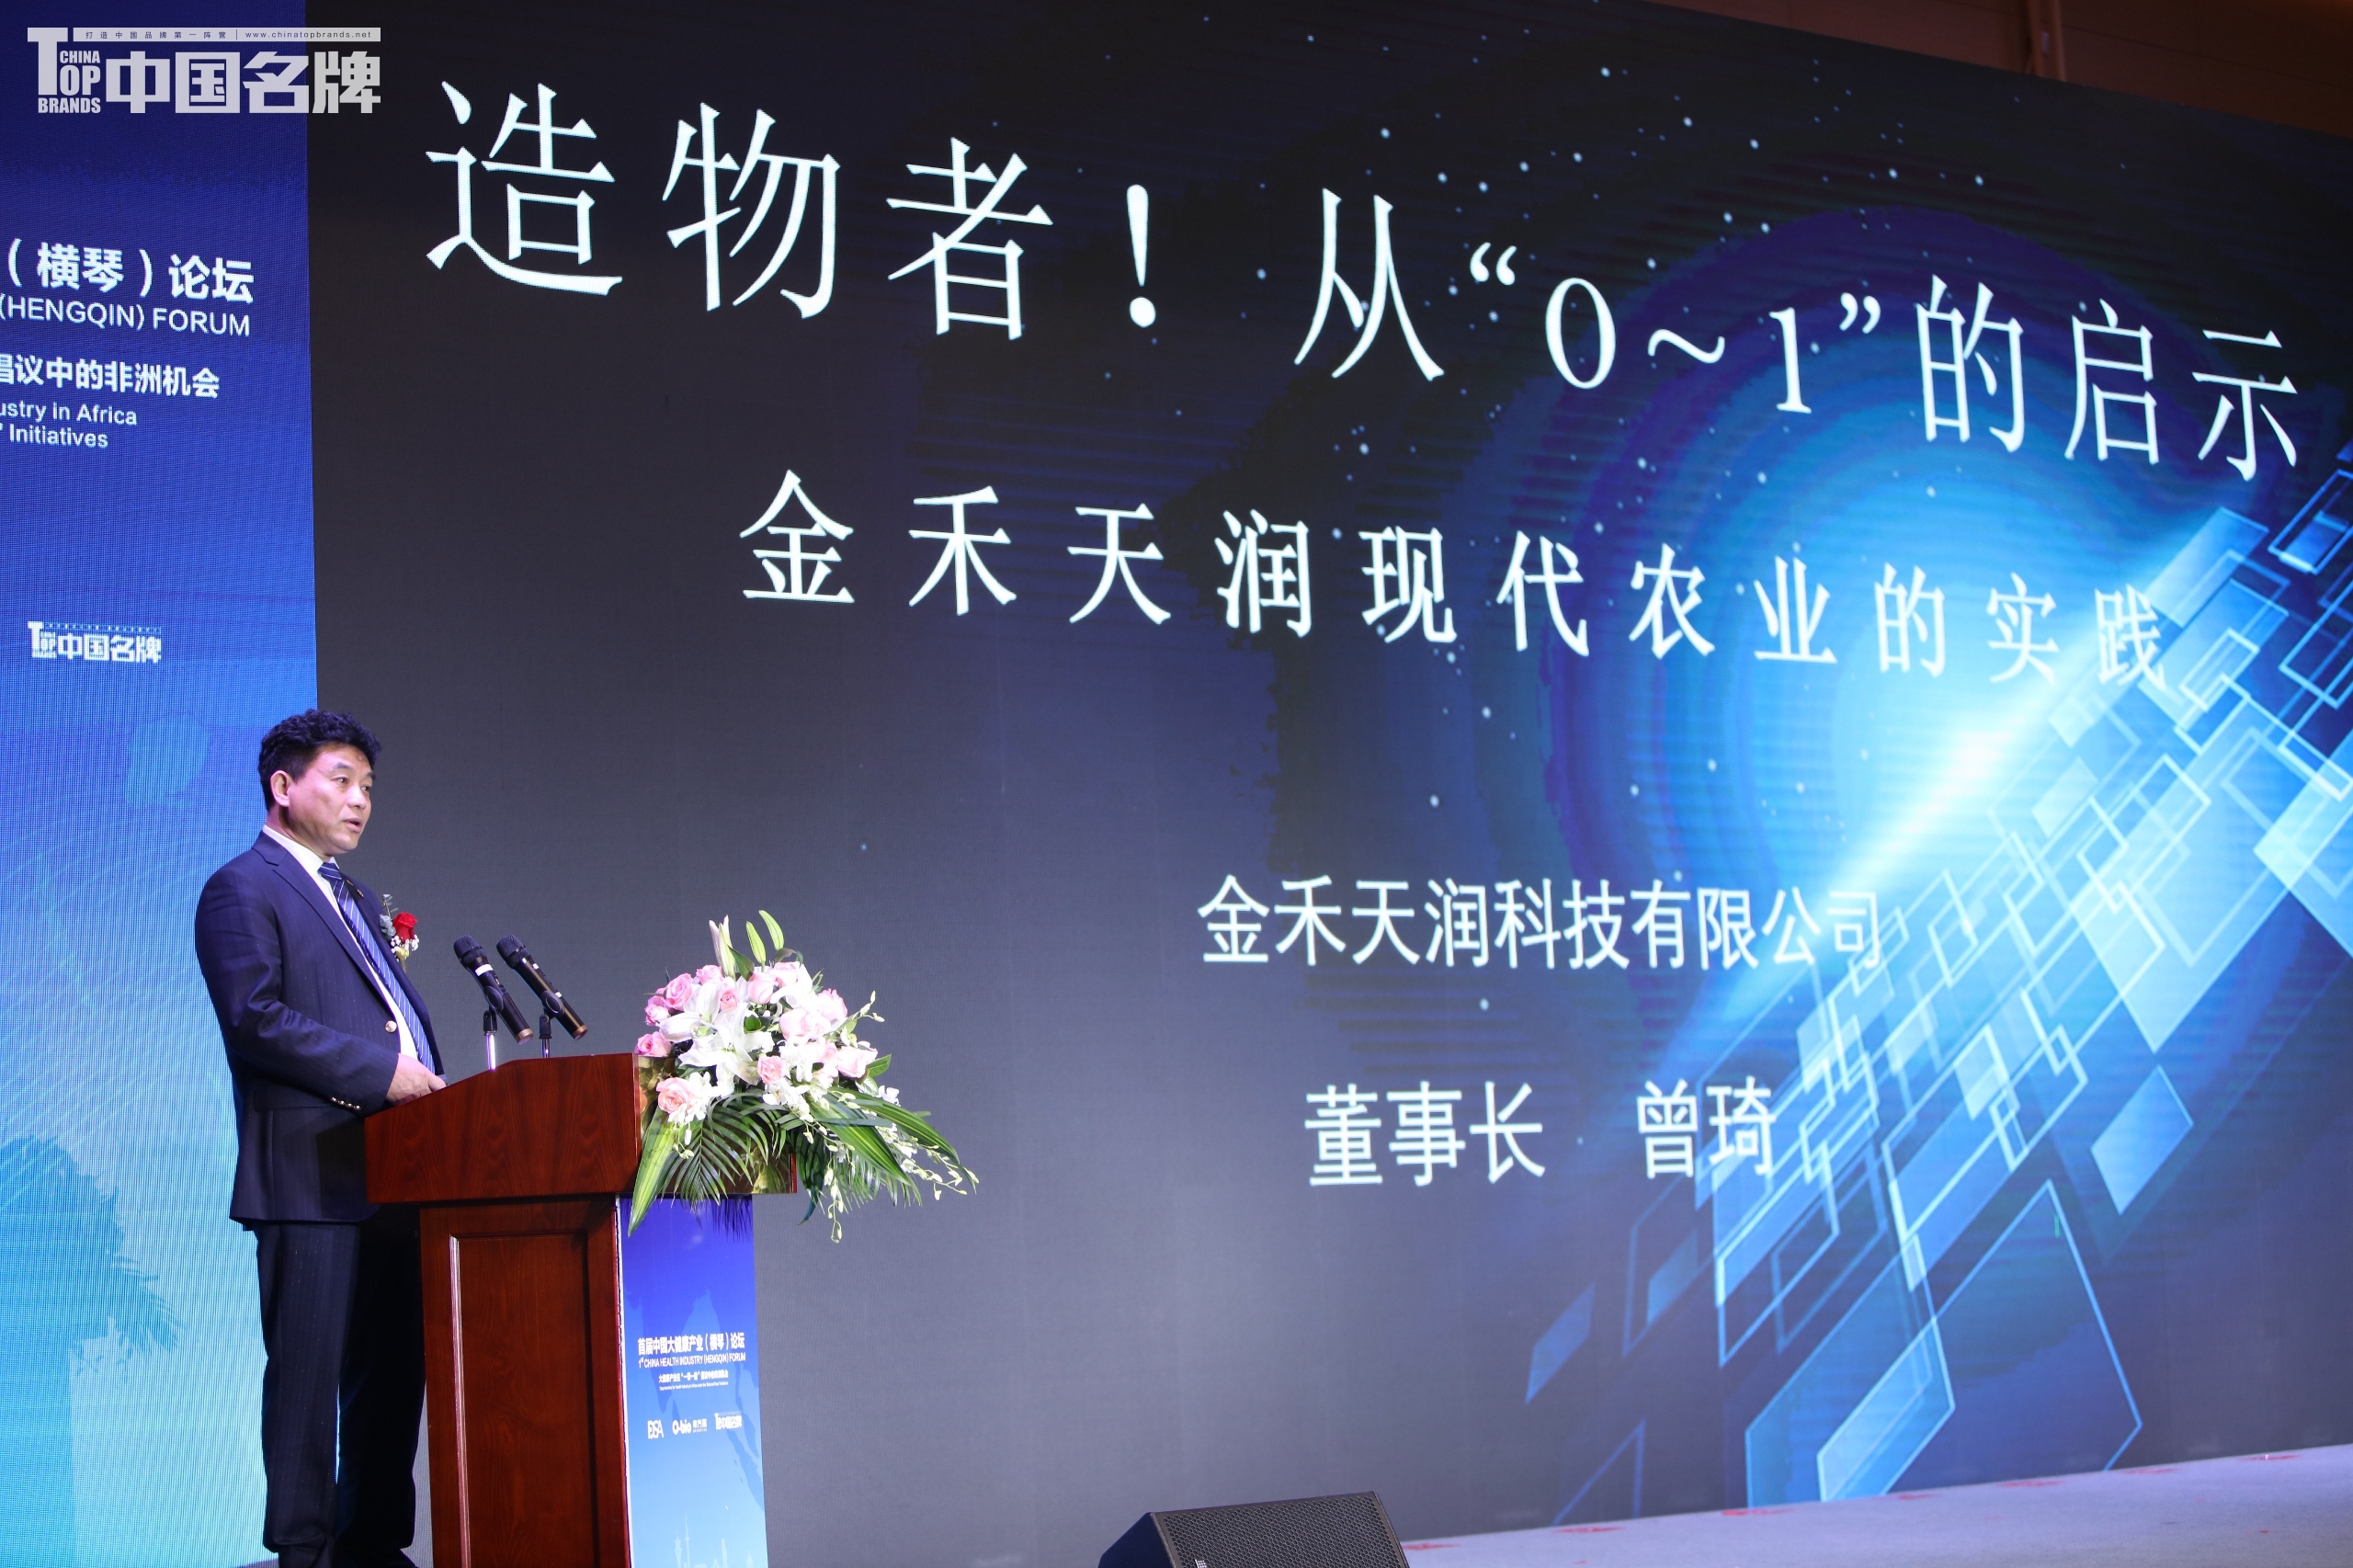 金禾天润农业科技有限公司董事长曾琦发表主题演讲